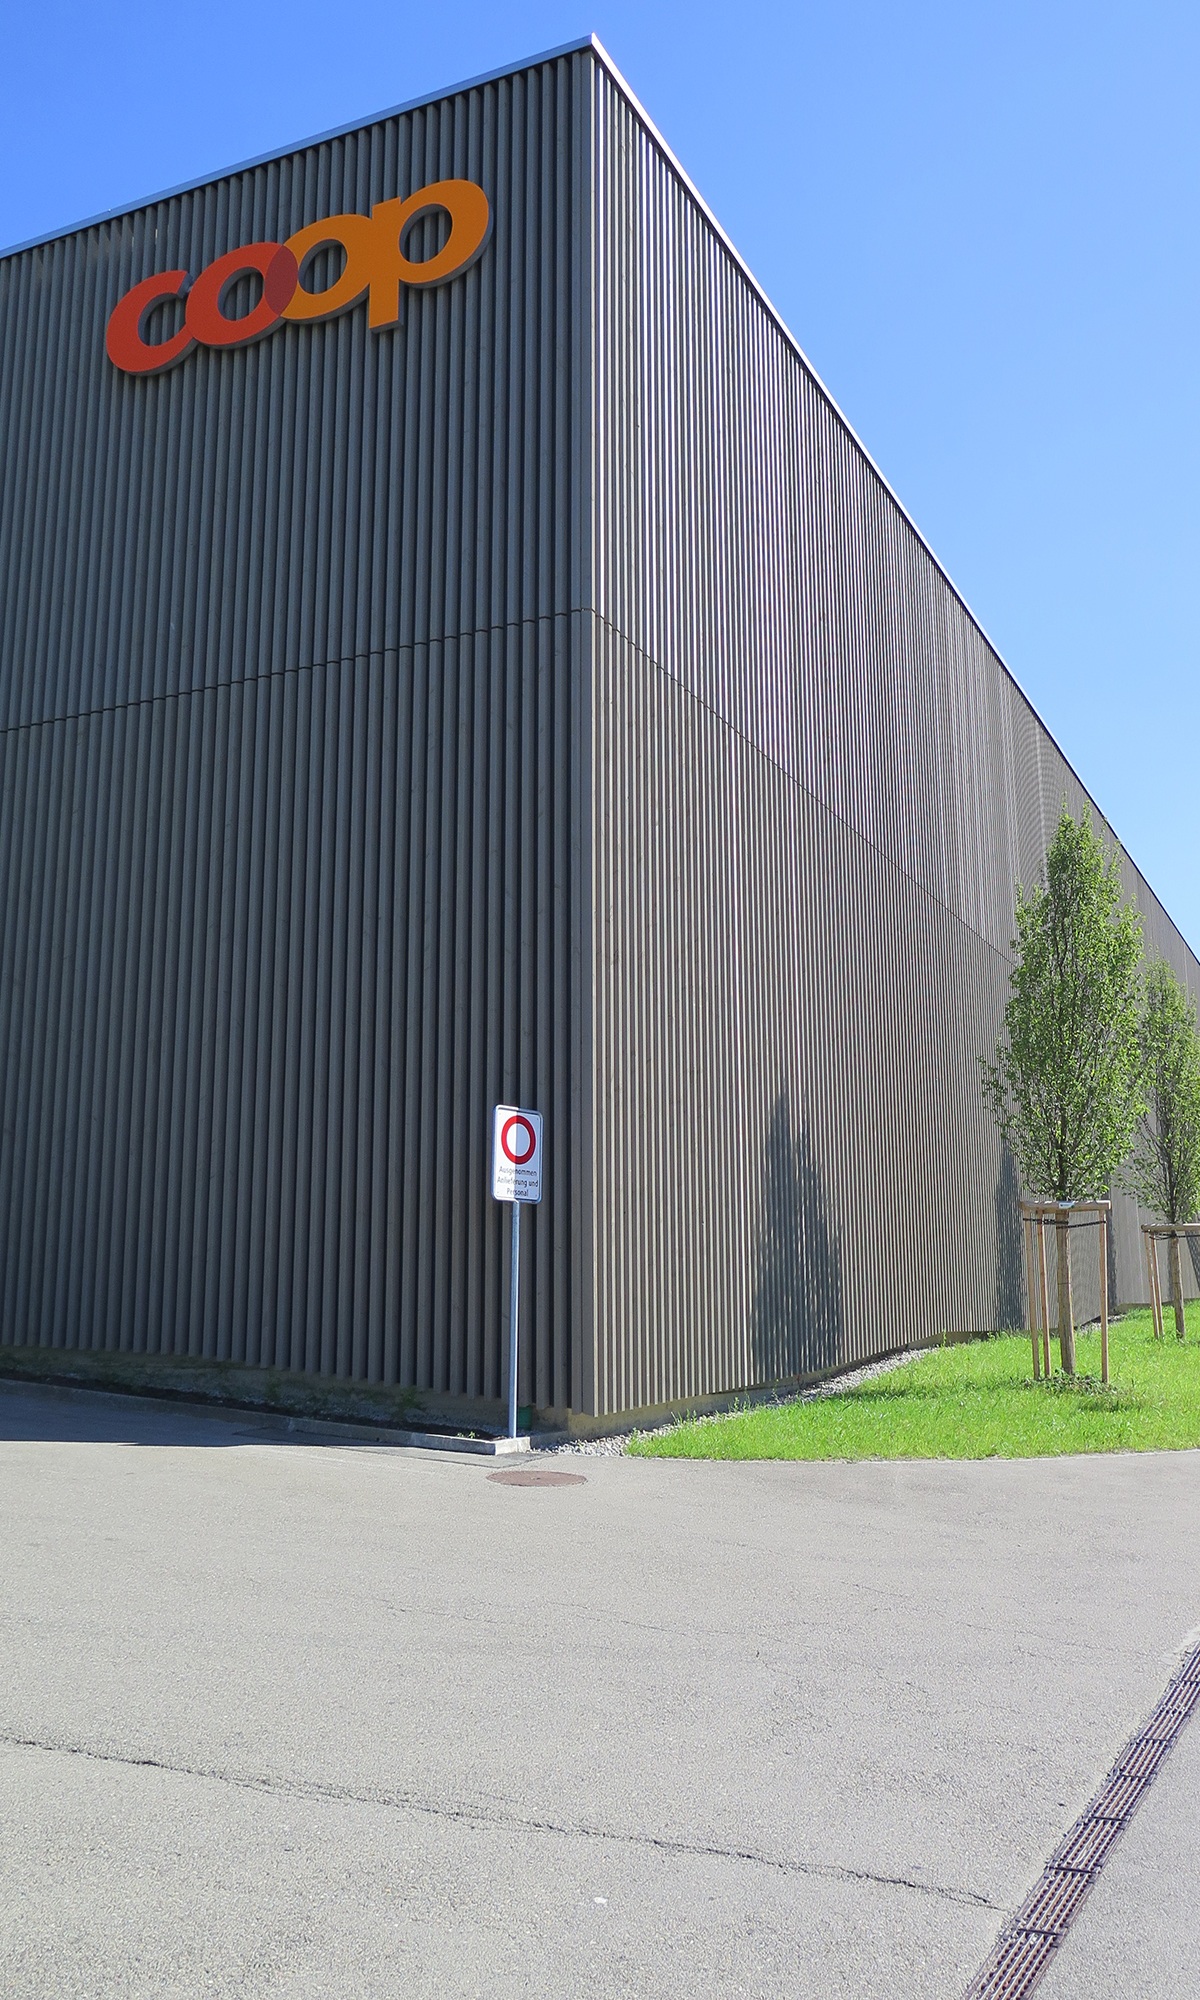 Detailansicht der schlichten dunklen Holzfassade des Coop Super Centers Uzwil mit markantem Logo.